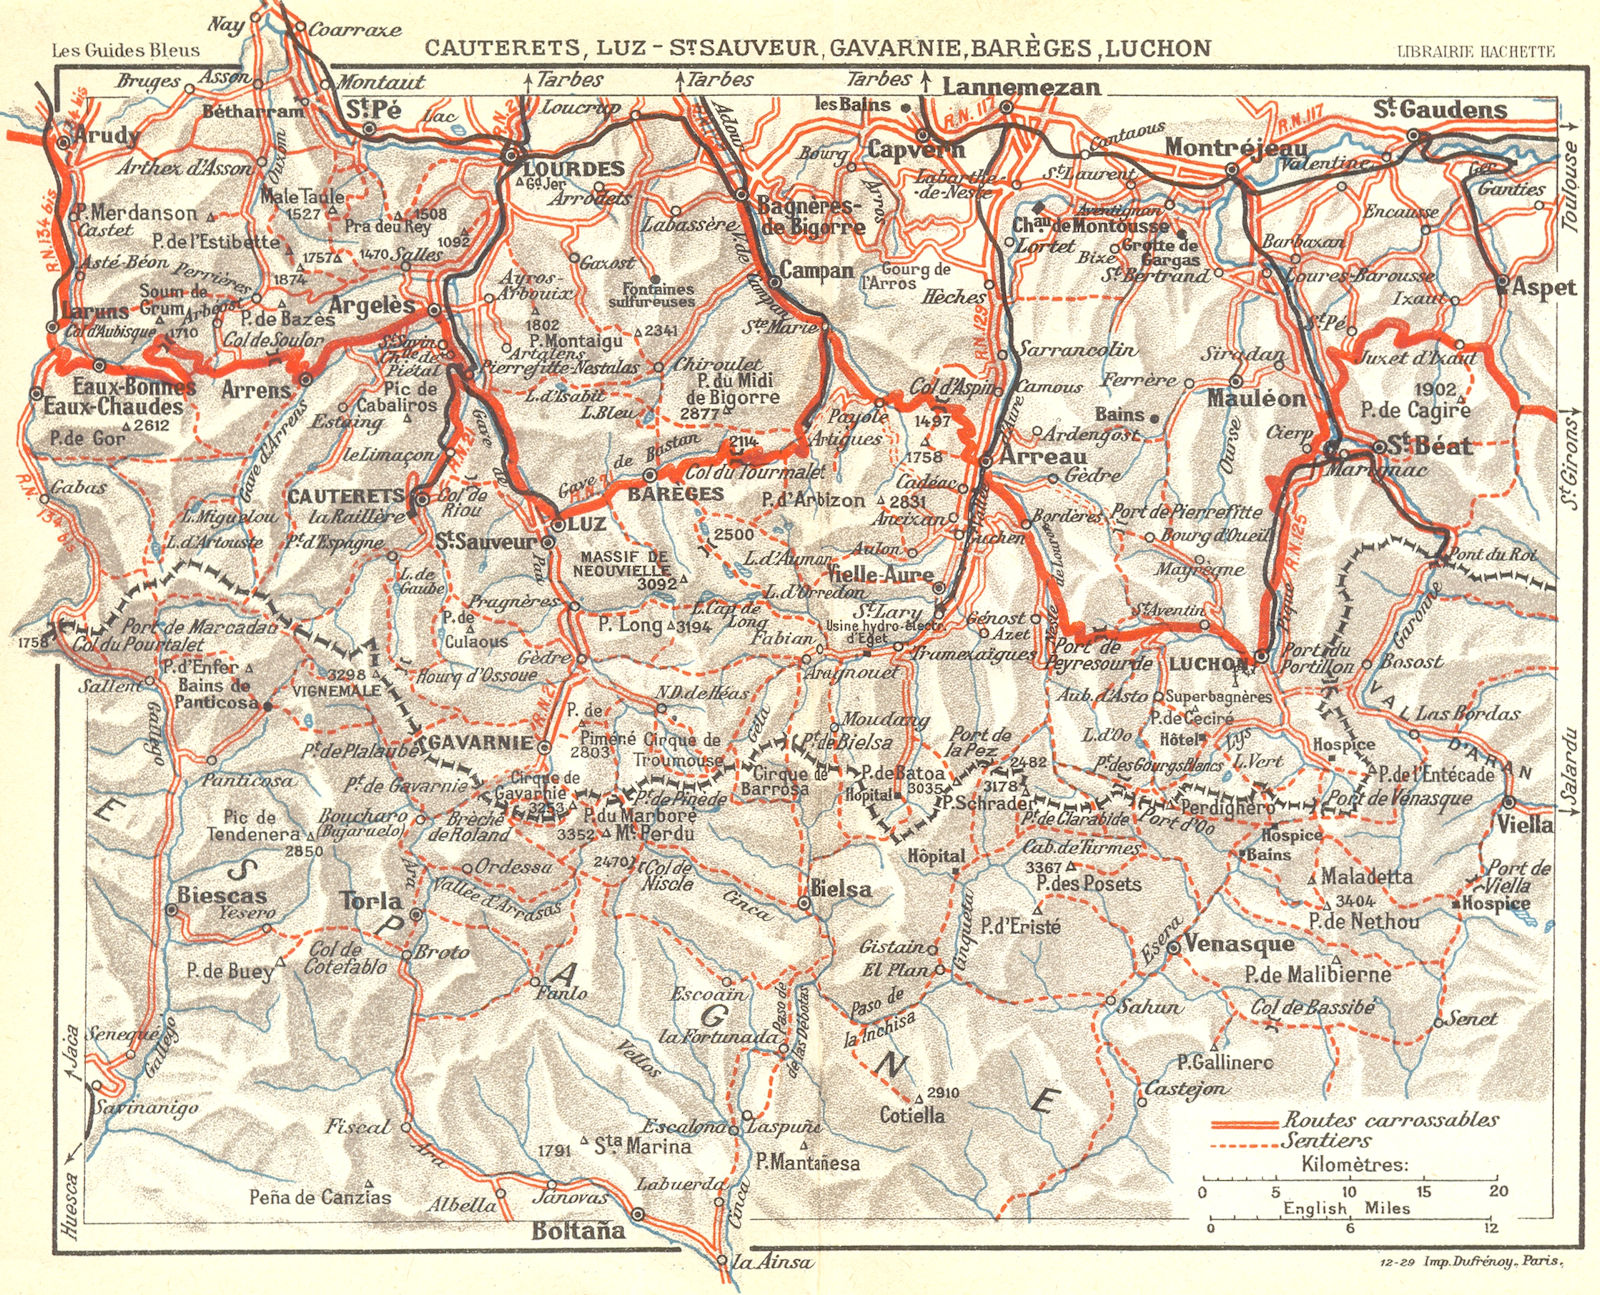 HAUTES-PYRENEES. Lourdes Cauterets, Luz, Gavarnie 1926 old vintage map chart